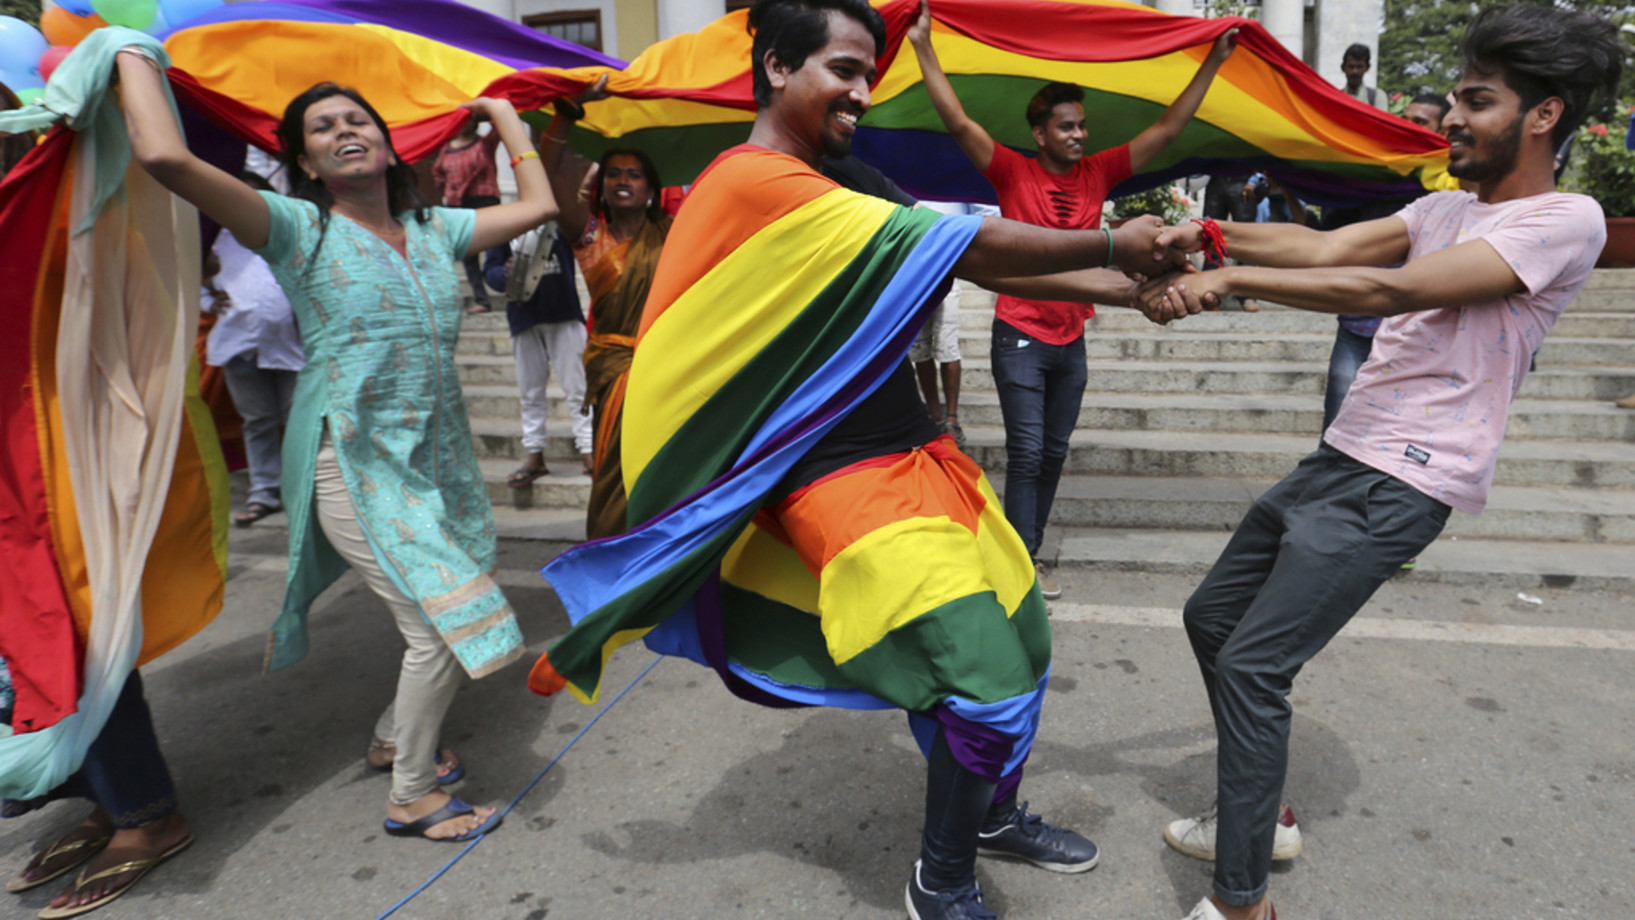 Angehörige der LGBTQ-Community in Bangalore tanzen nach Bekanntwerden des Entscheids des Obersten Gerichts, ein gegen Homosexualität gerichtetes Gesetz aus der Kolonialzeit aufzuheben. (Keystone/AP, Aijaz Rahi)